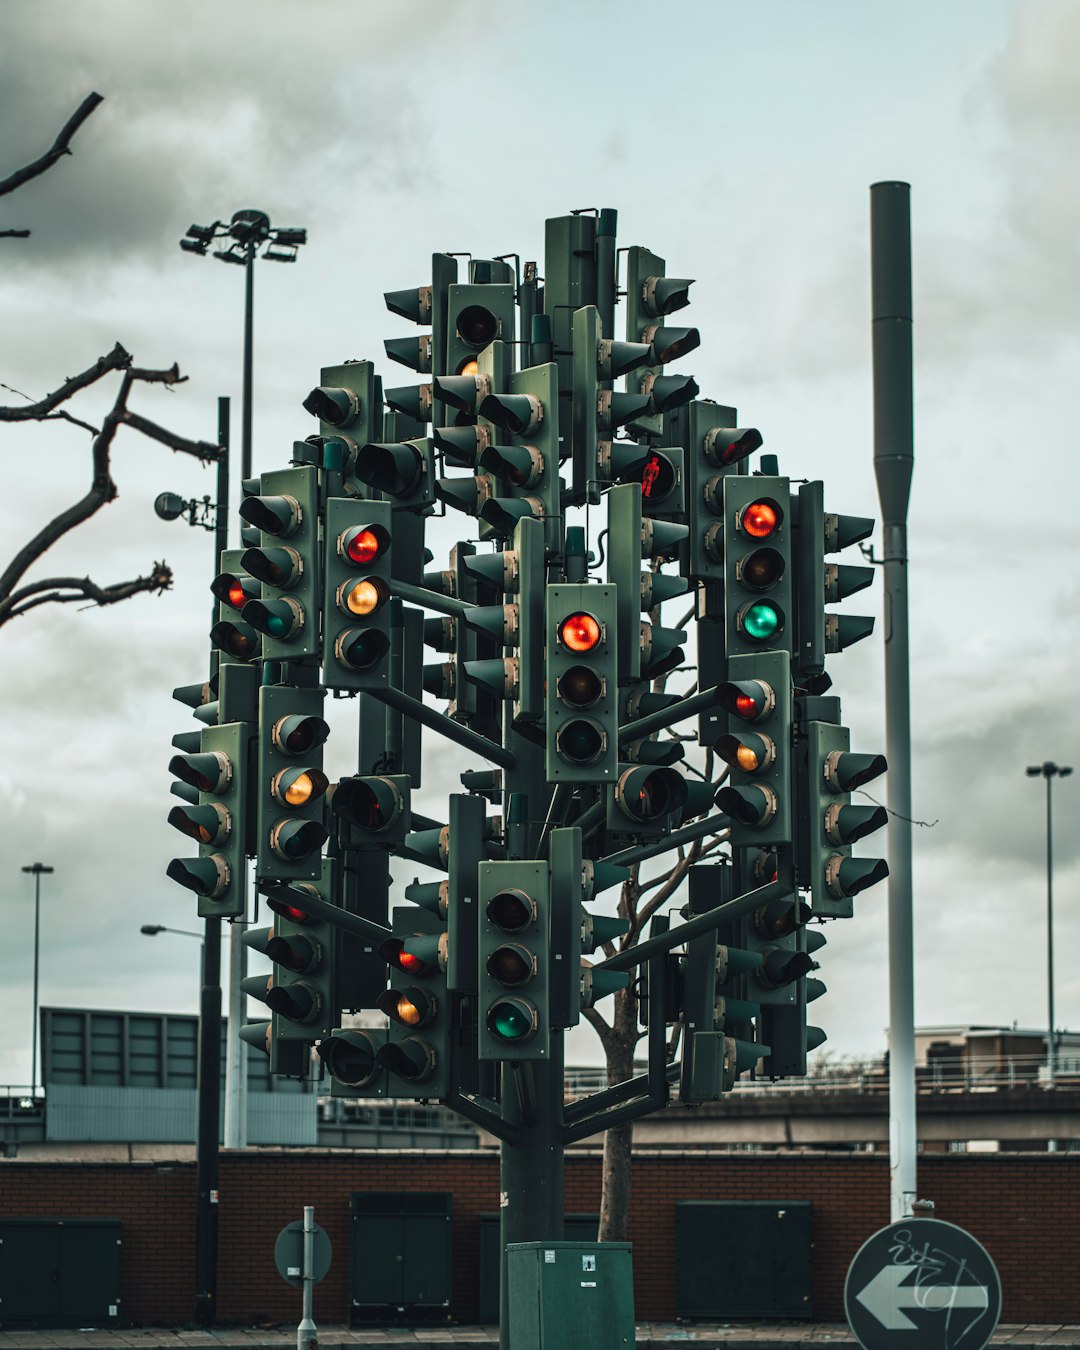 traffic light on green light during daytime